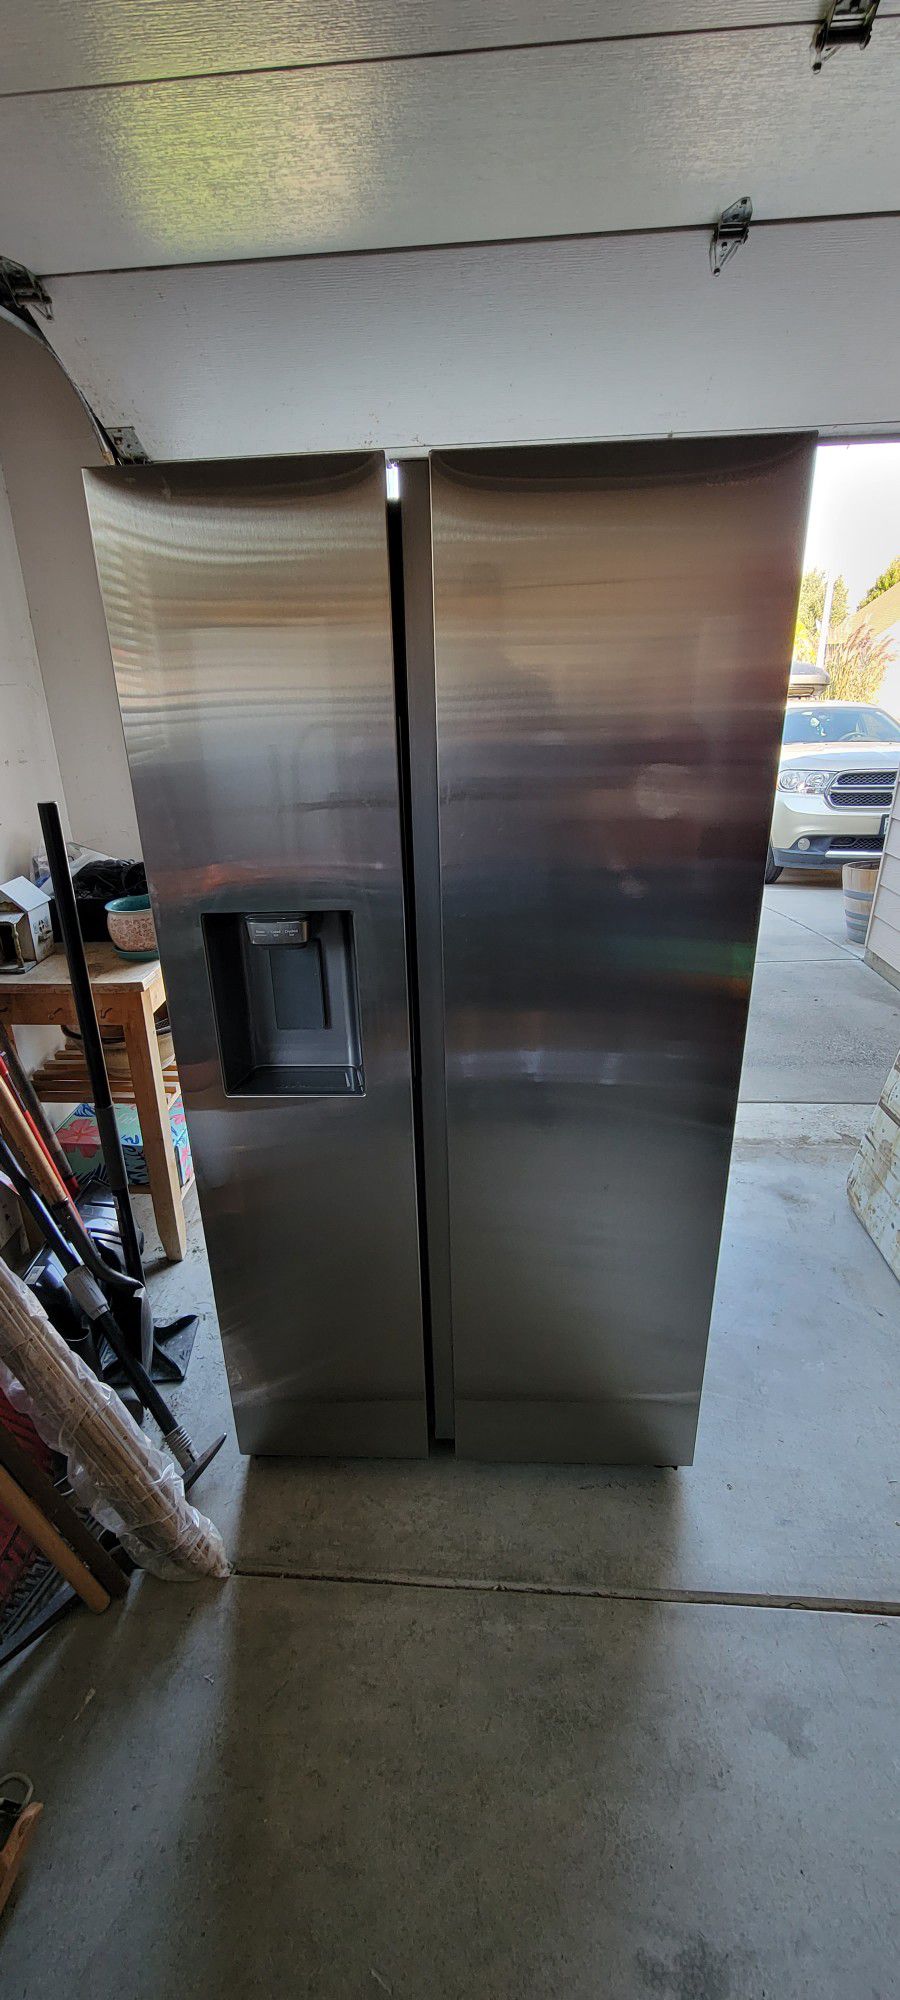 SAMSUNG Refrigerator Model RS27T5200SR